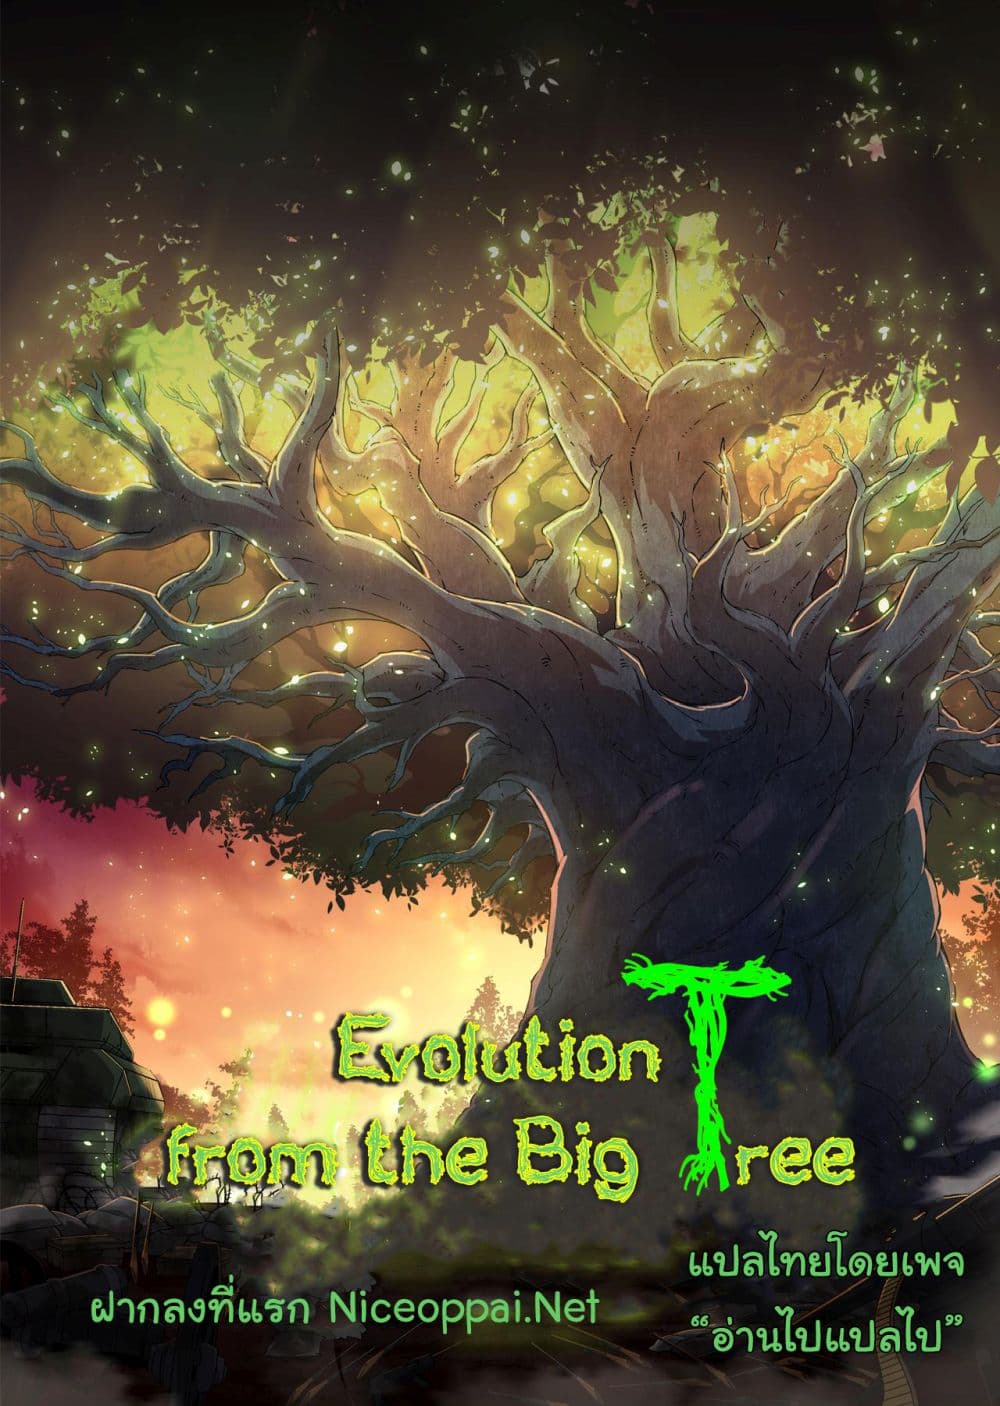 Evolution from the Big Tree Ã Â¸â€¢Ã Â¸Â­Ã Â¸â„¢Ã Â¸â€”Ã Â¸ÂµÃ Â¹Ë† 28 (47)